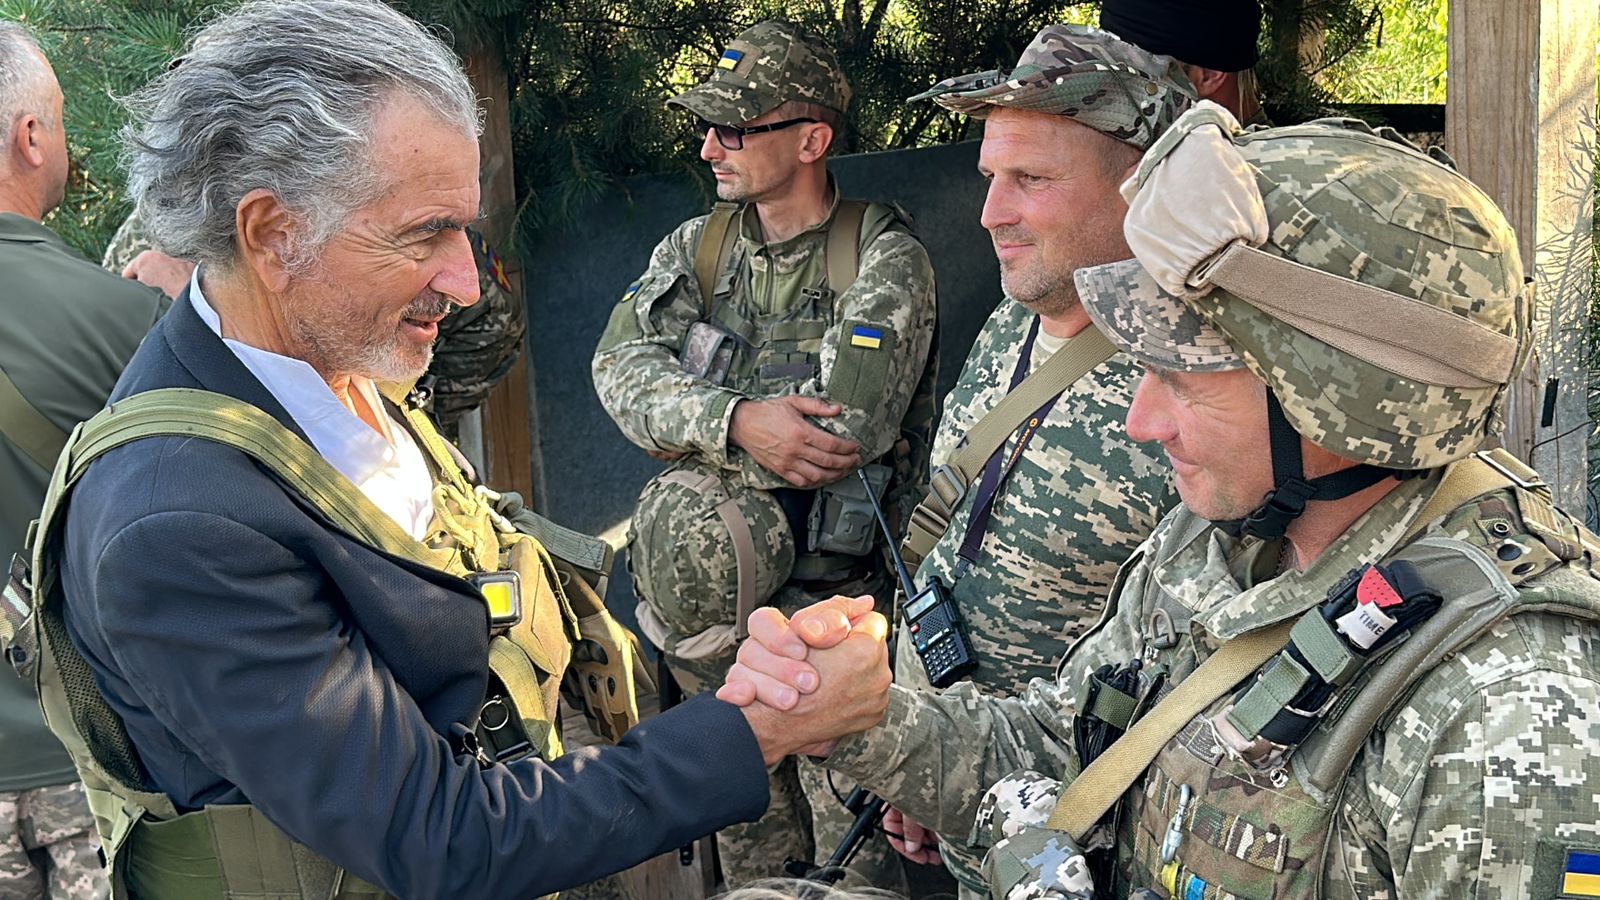 Le philosophe serre la main d'un soldat Ukrainien lors d'un reportage sur le front ukrainien contre la Russie.